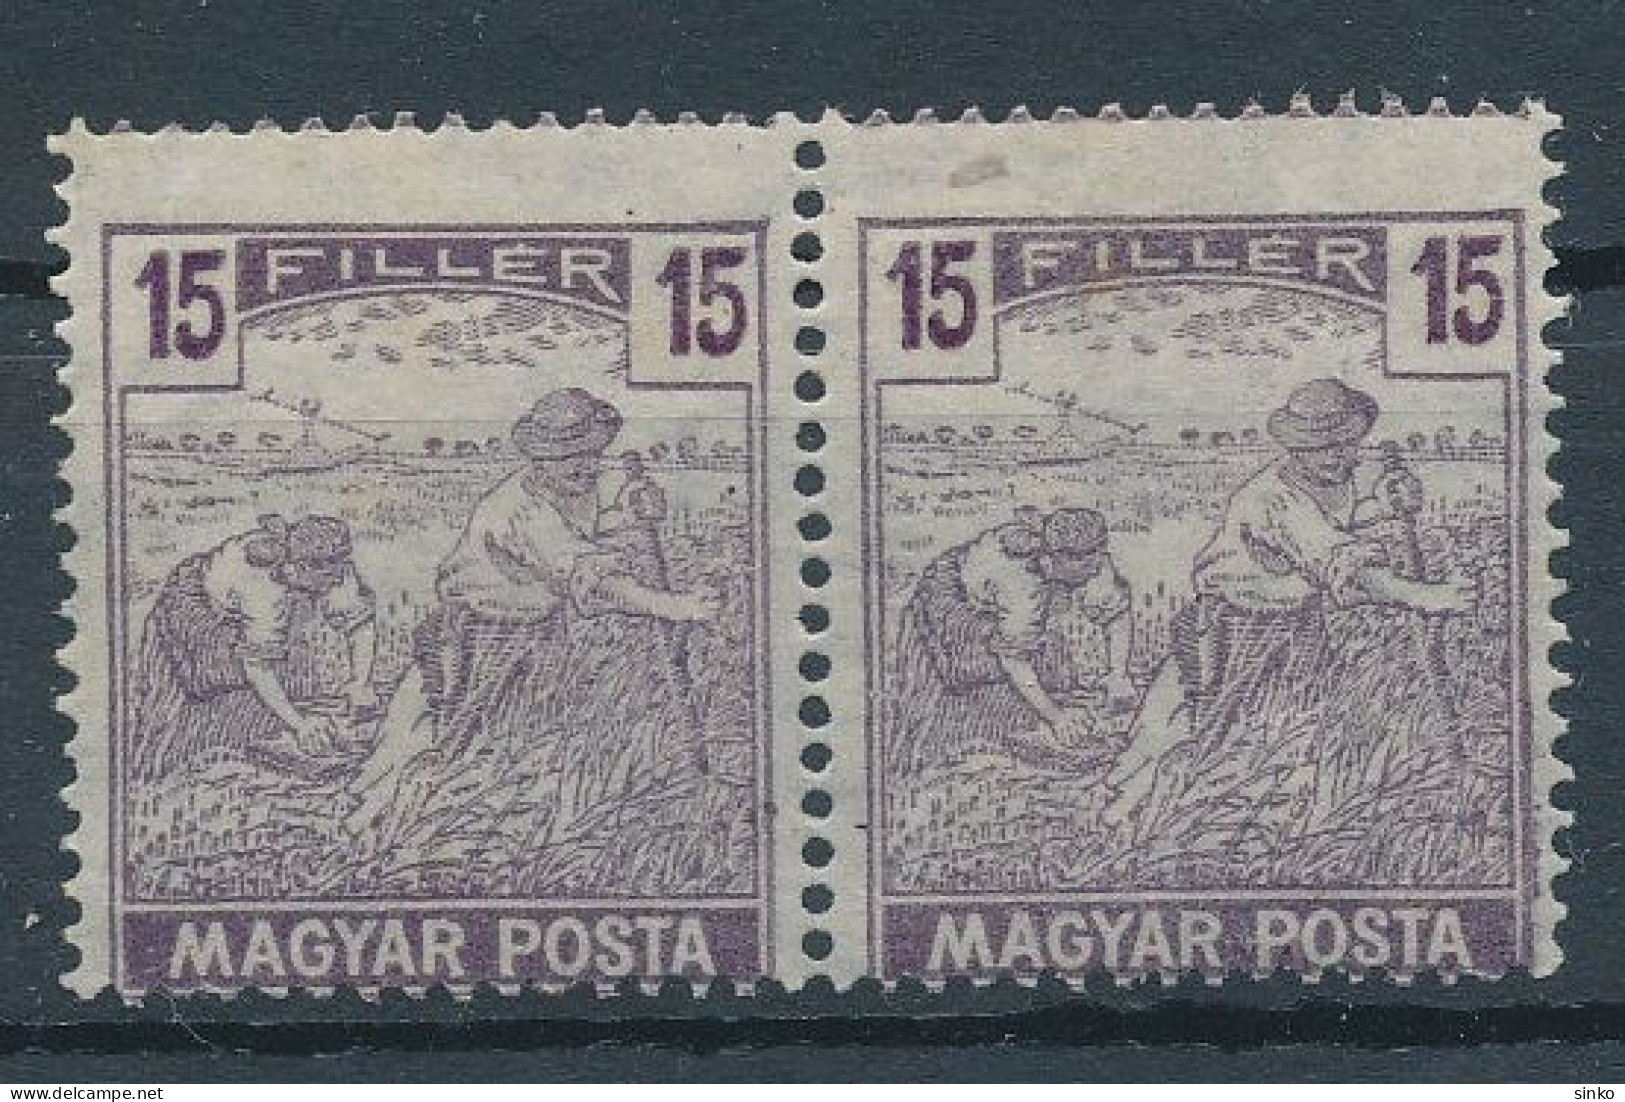 1919. Hungarian Post Office - Misprint - Varietà & Curiosità